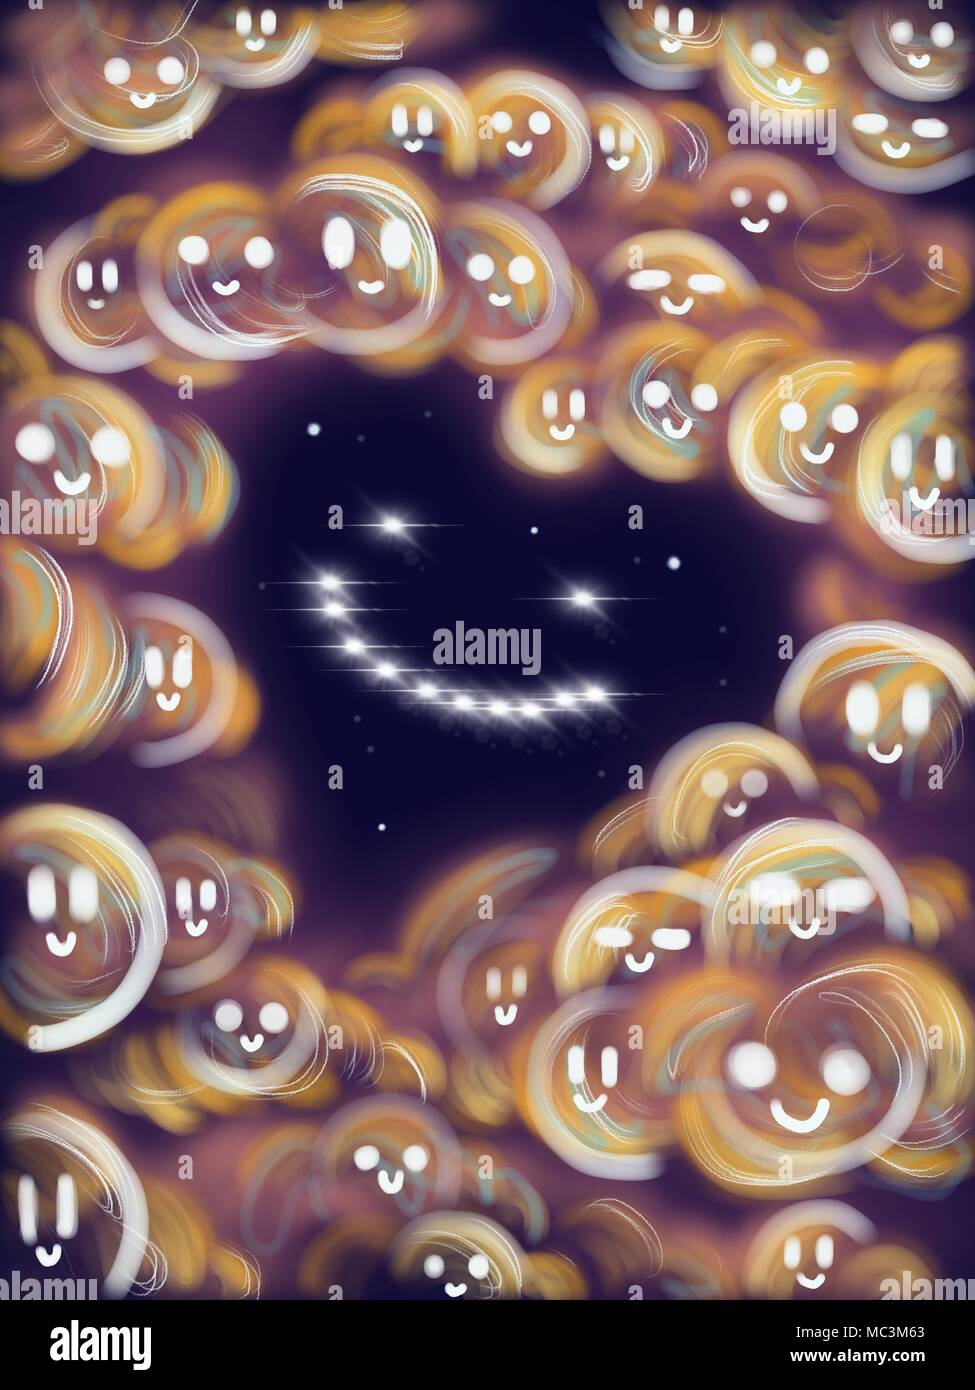 Lächelndes Herz im Raum von leuchtenden Sterne und Wolken mit einer lächelnden Gesichter 2d-Raster abstrakte Vertikale hochauflösende Abbildung gemacht Stockfoto